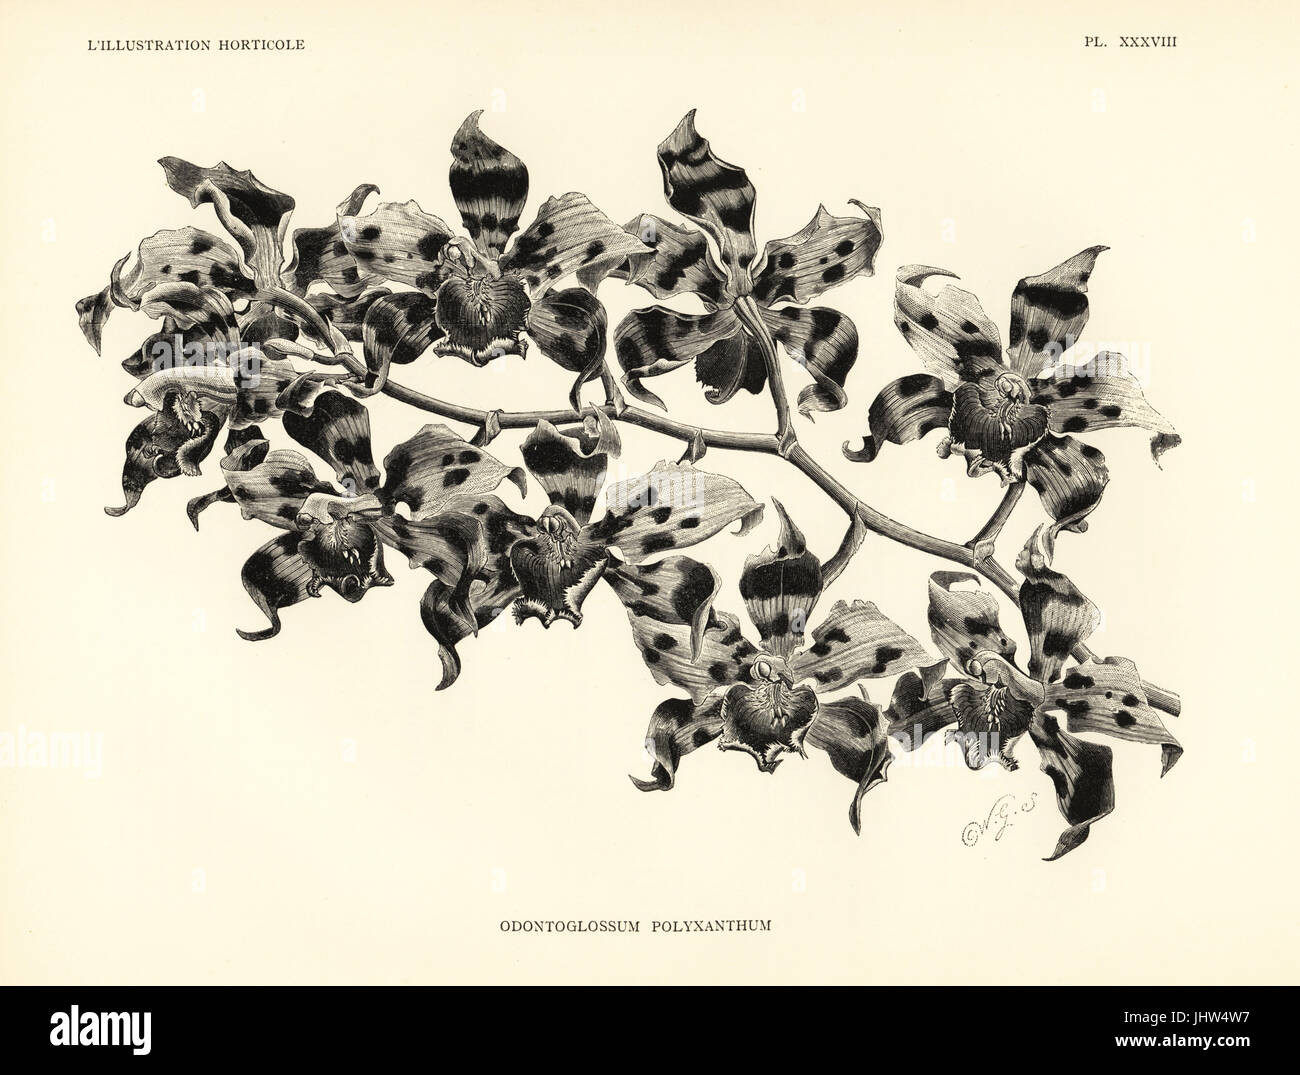 De Kegel odontoglossum Oncidium orchidée, polyxanthum kegeljani (Odontoglossum). Gravure sur bois après une illustration par Worthington G. Smith, de Jean Linden's l'Illustration horticole, Bruxelles, 1888. Banque D'Images